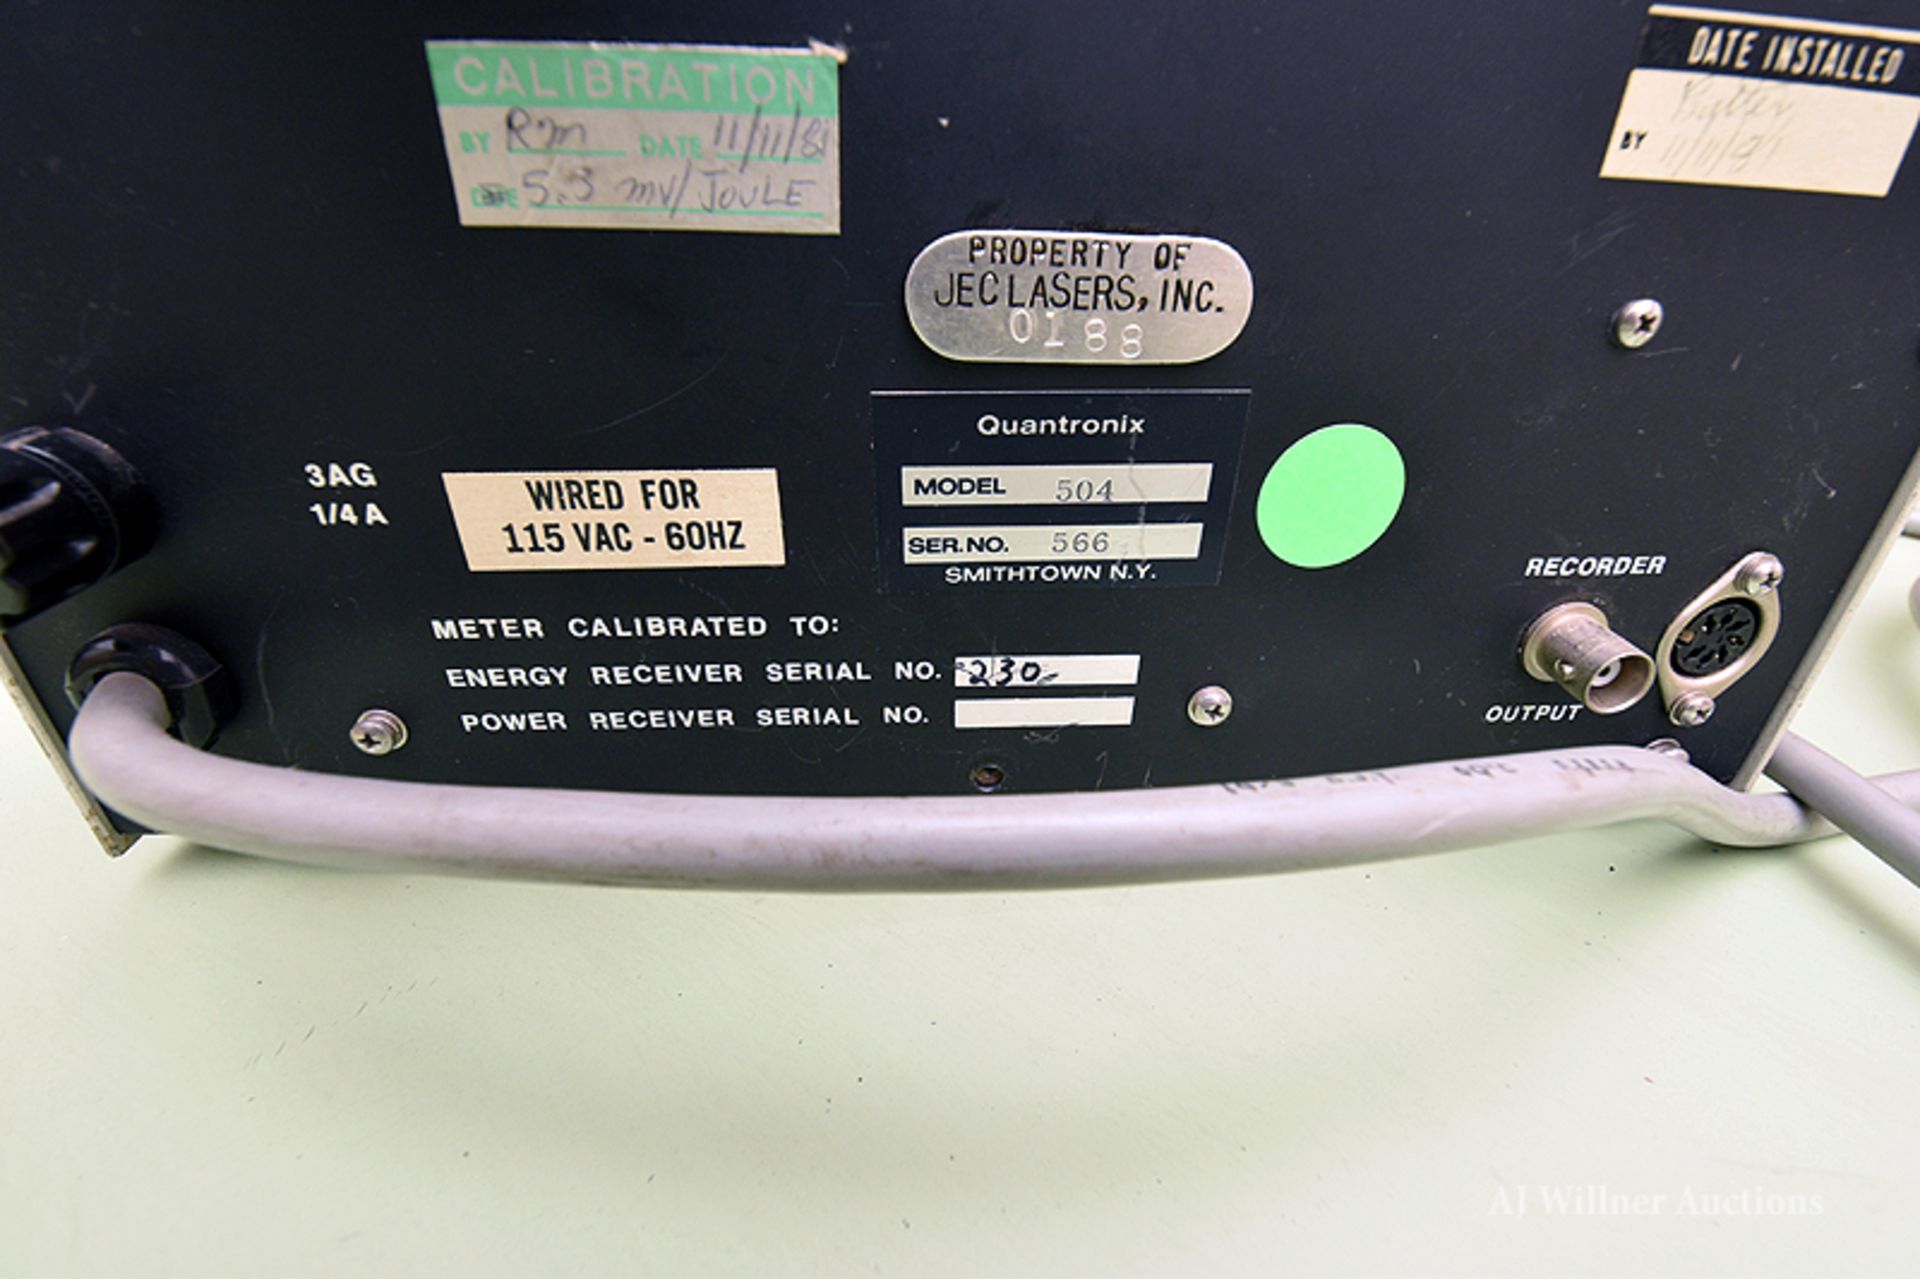 Quantronix 504 Energy Power Meter - Image 2 of 2